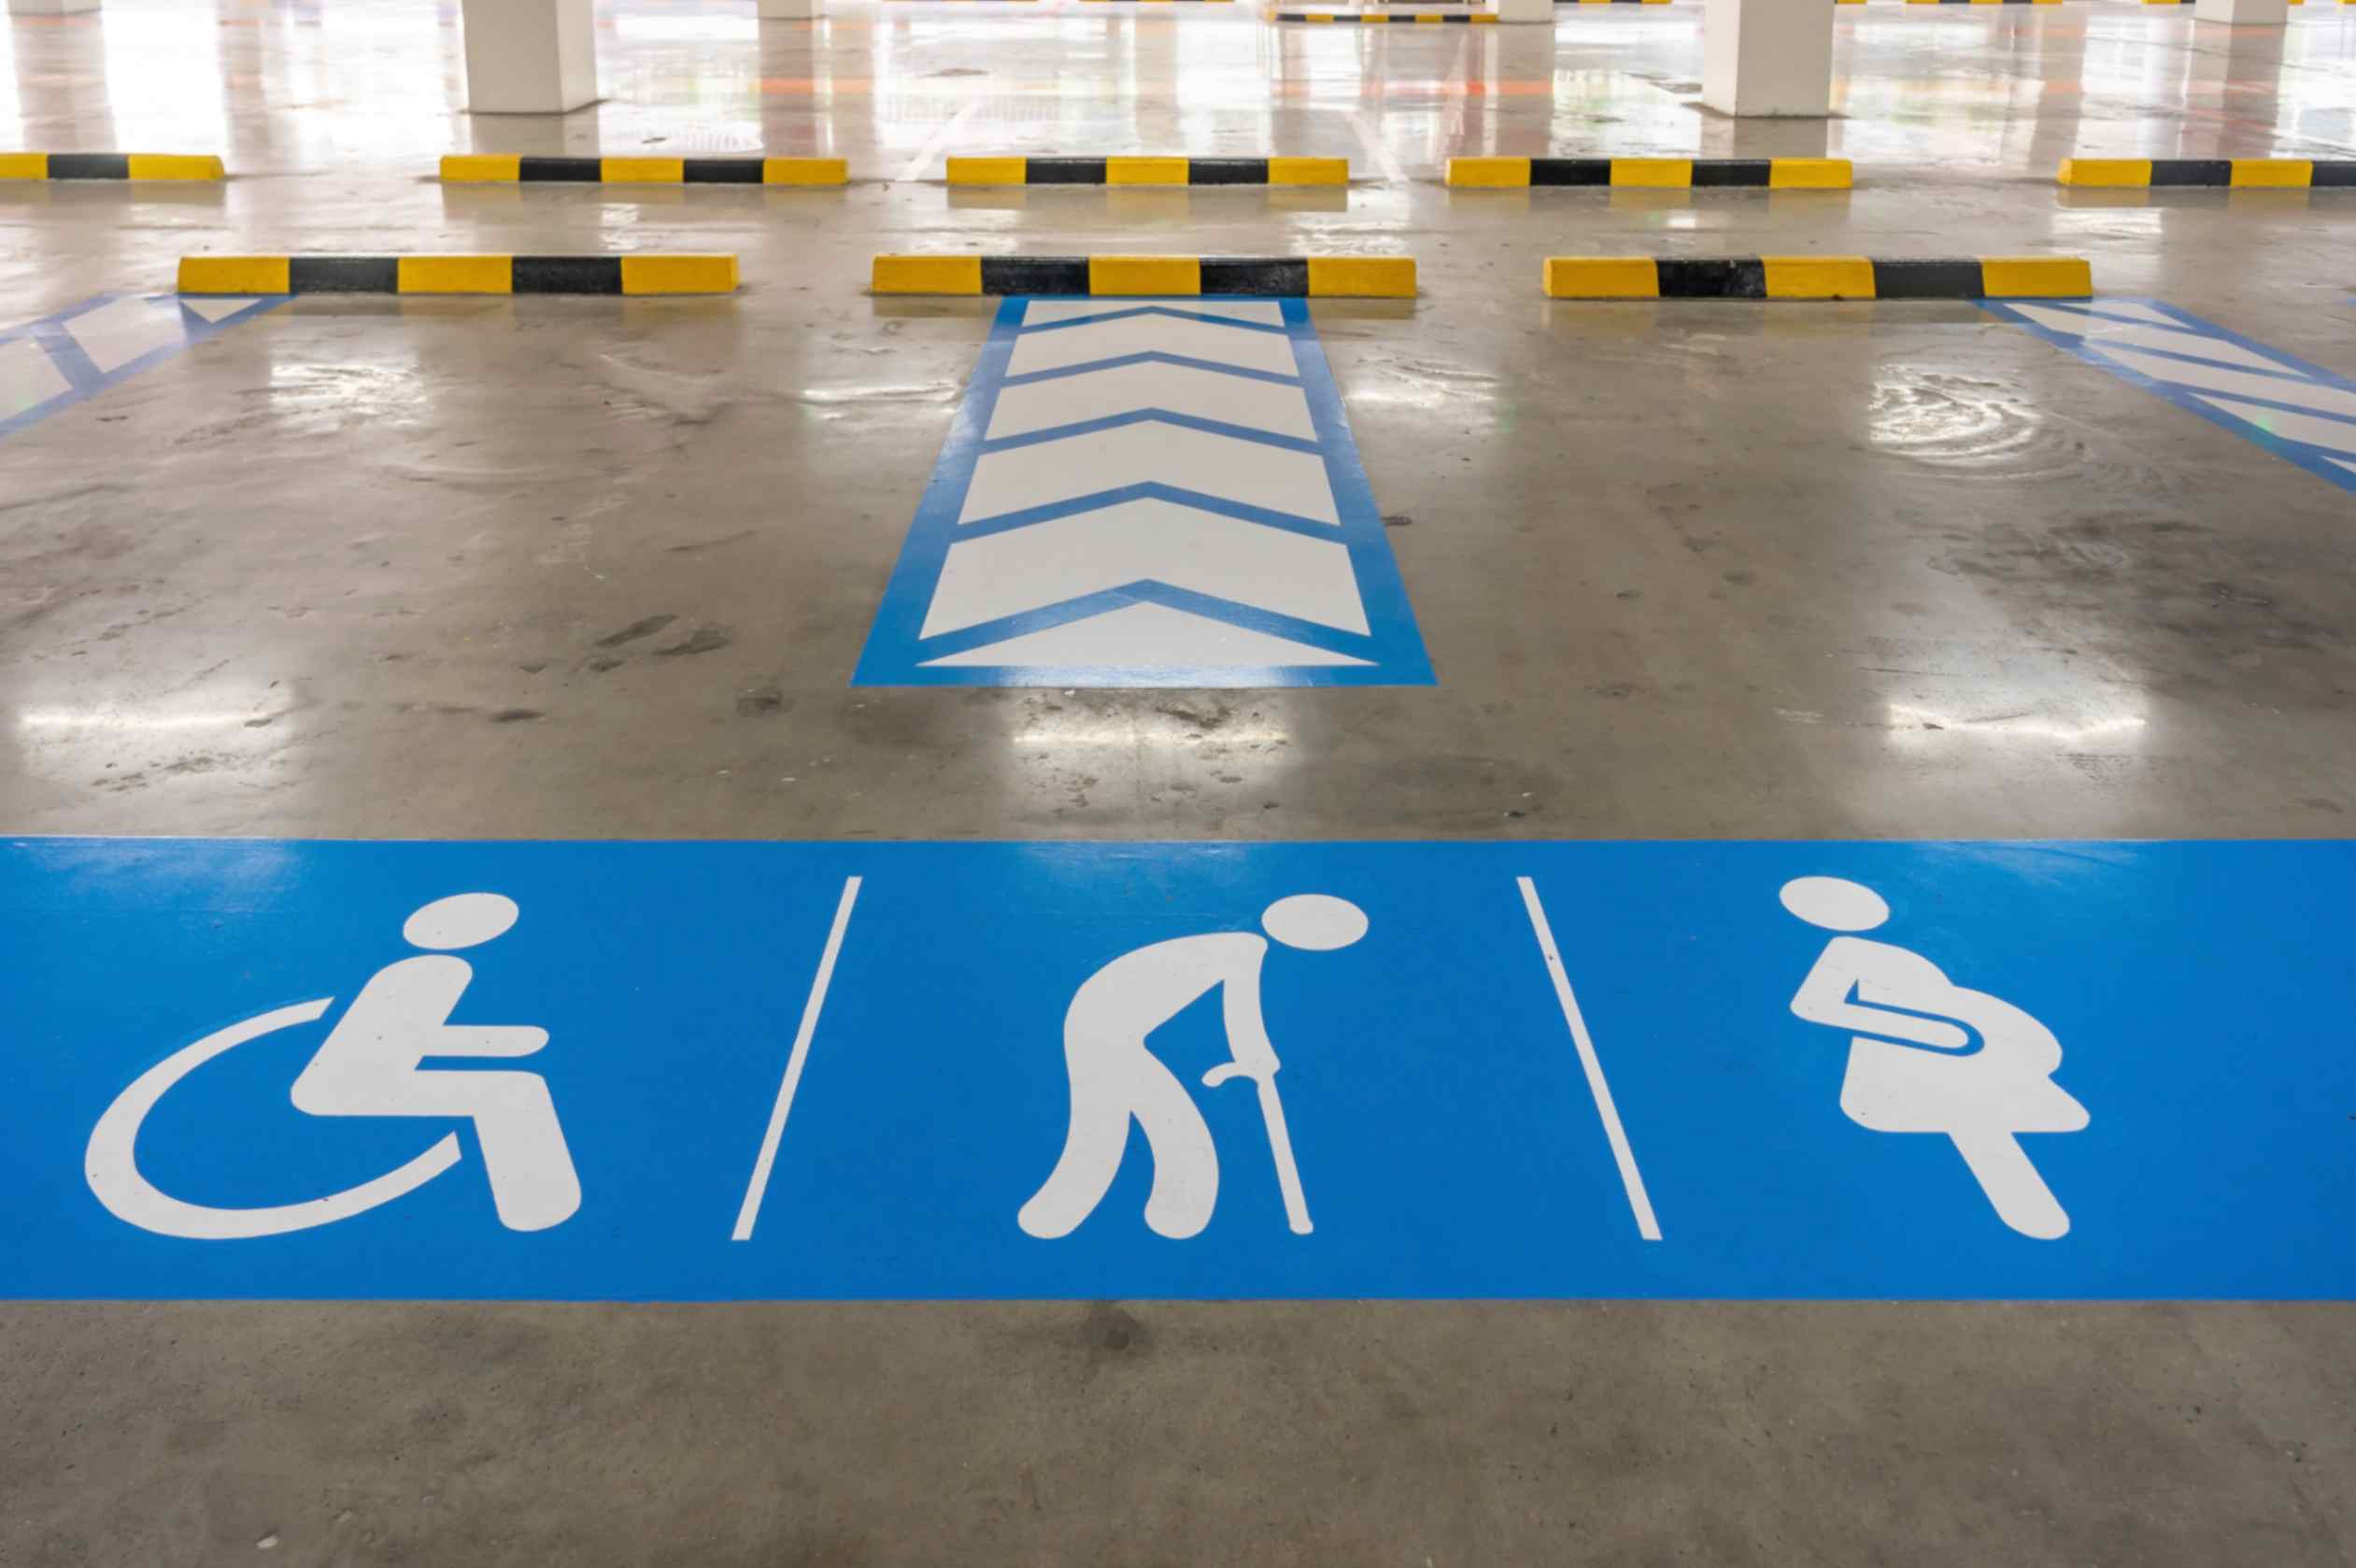 Estacionamiento no autorizado en lugares de aparcamiento dedicadas a personas con discapacidad